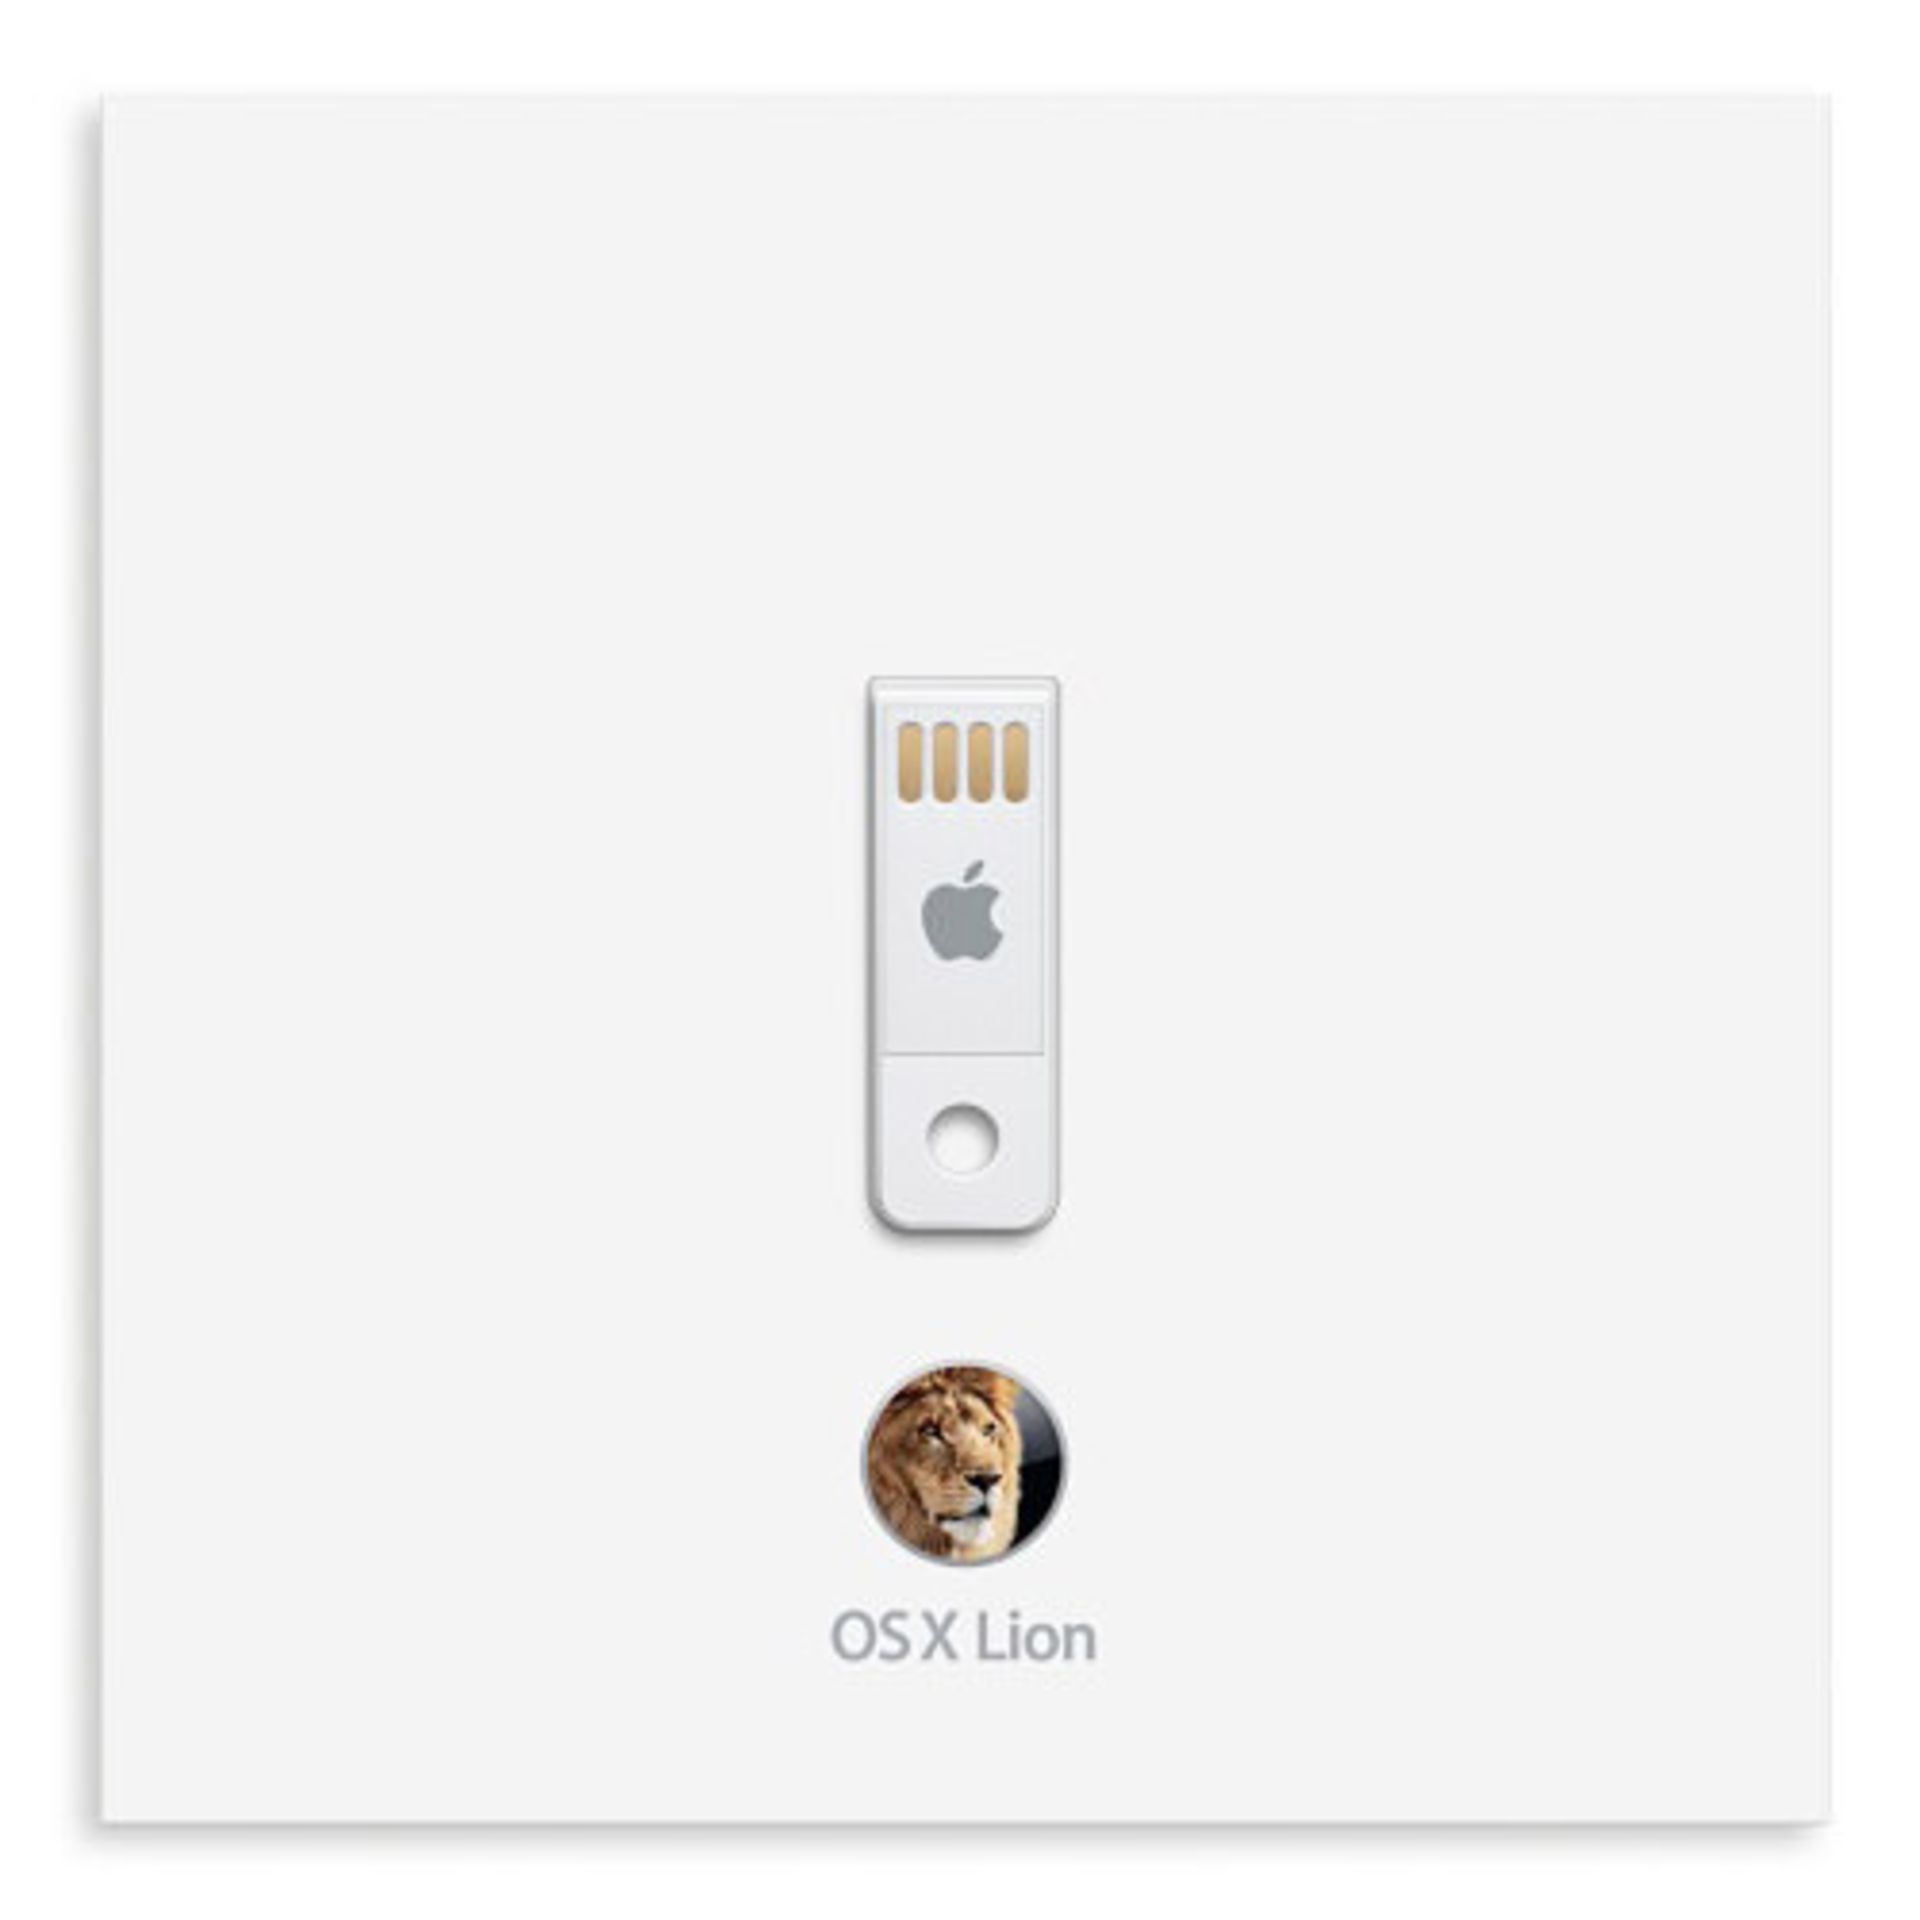 فلش مک او اس لاین Mac OS X Lion USB Flash thumb drive